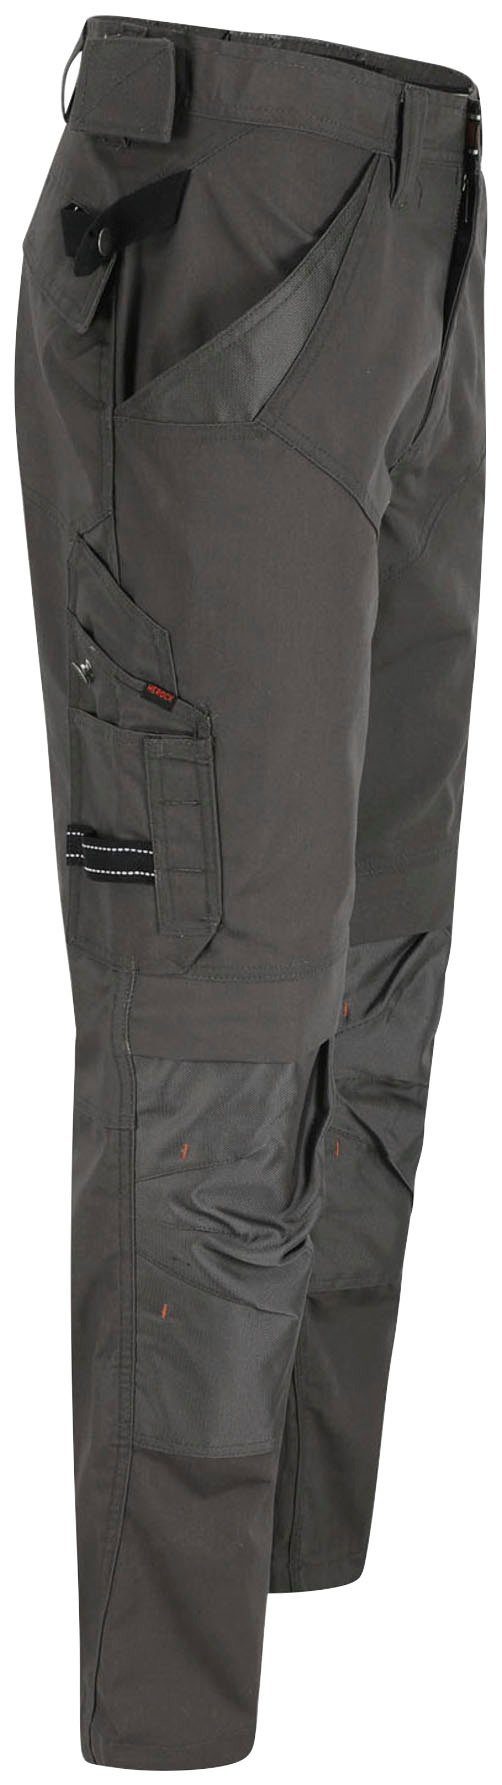 Hose Bund Herock Arbeitshose Taschen leicht Apollo grau & Regelbarer - - 8 bequem Wasserabweisend -